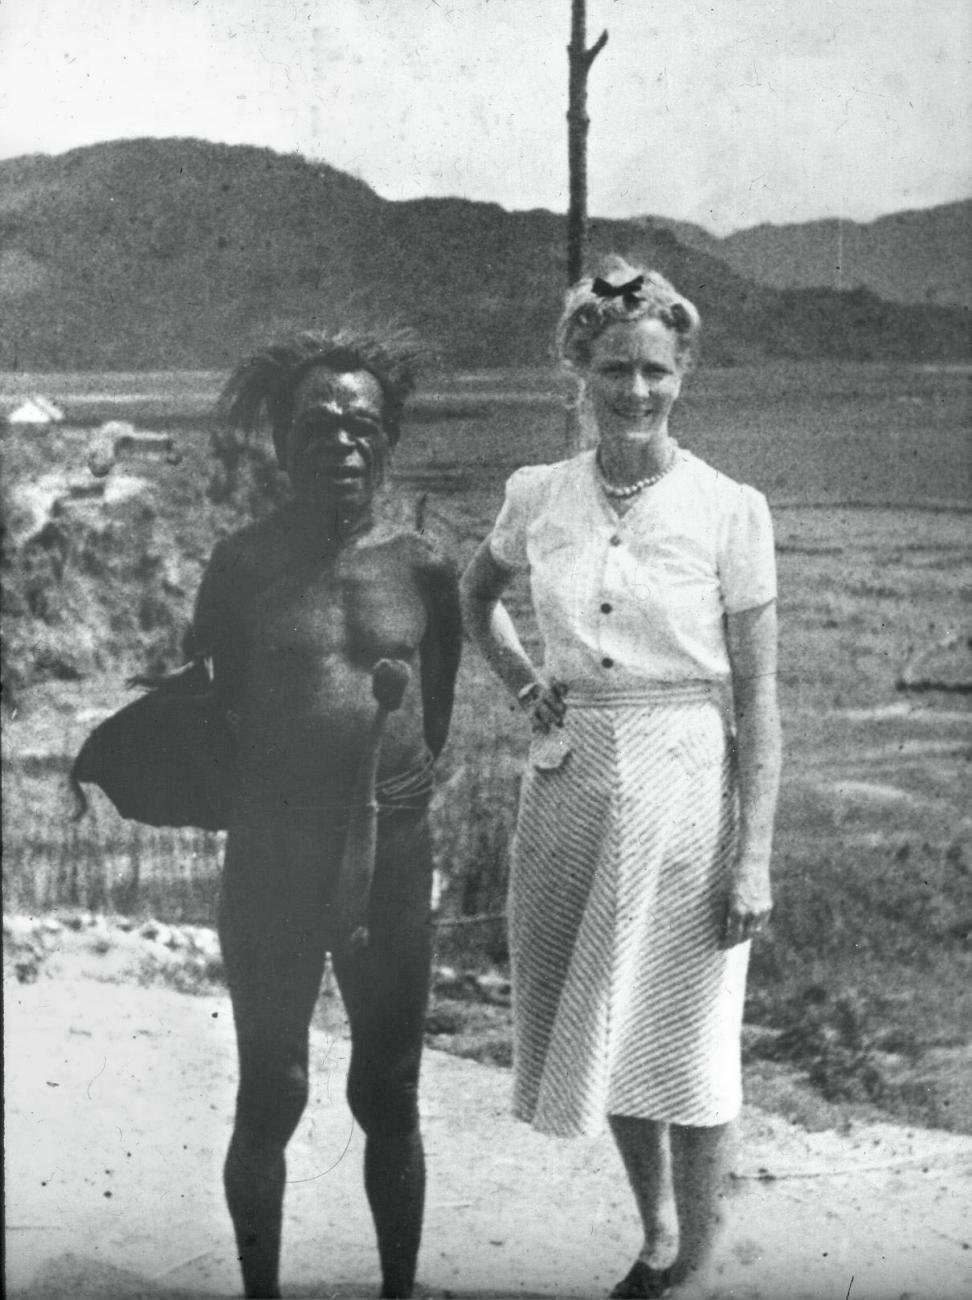 BD/66/284 - 
Westerse vrouw naast papua met peniskoker
